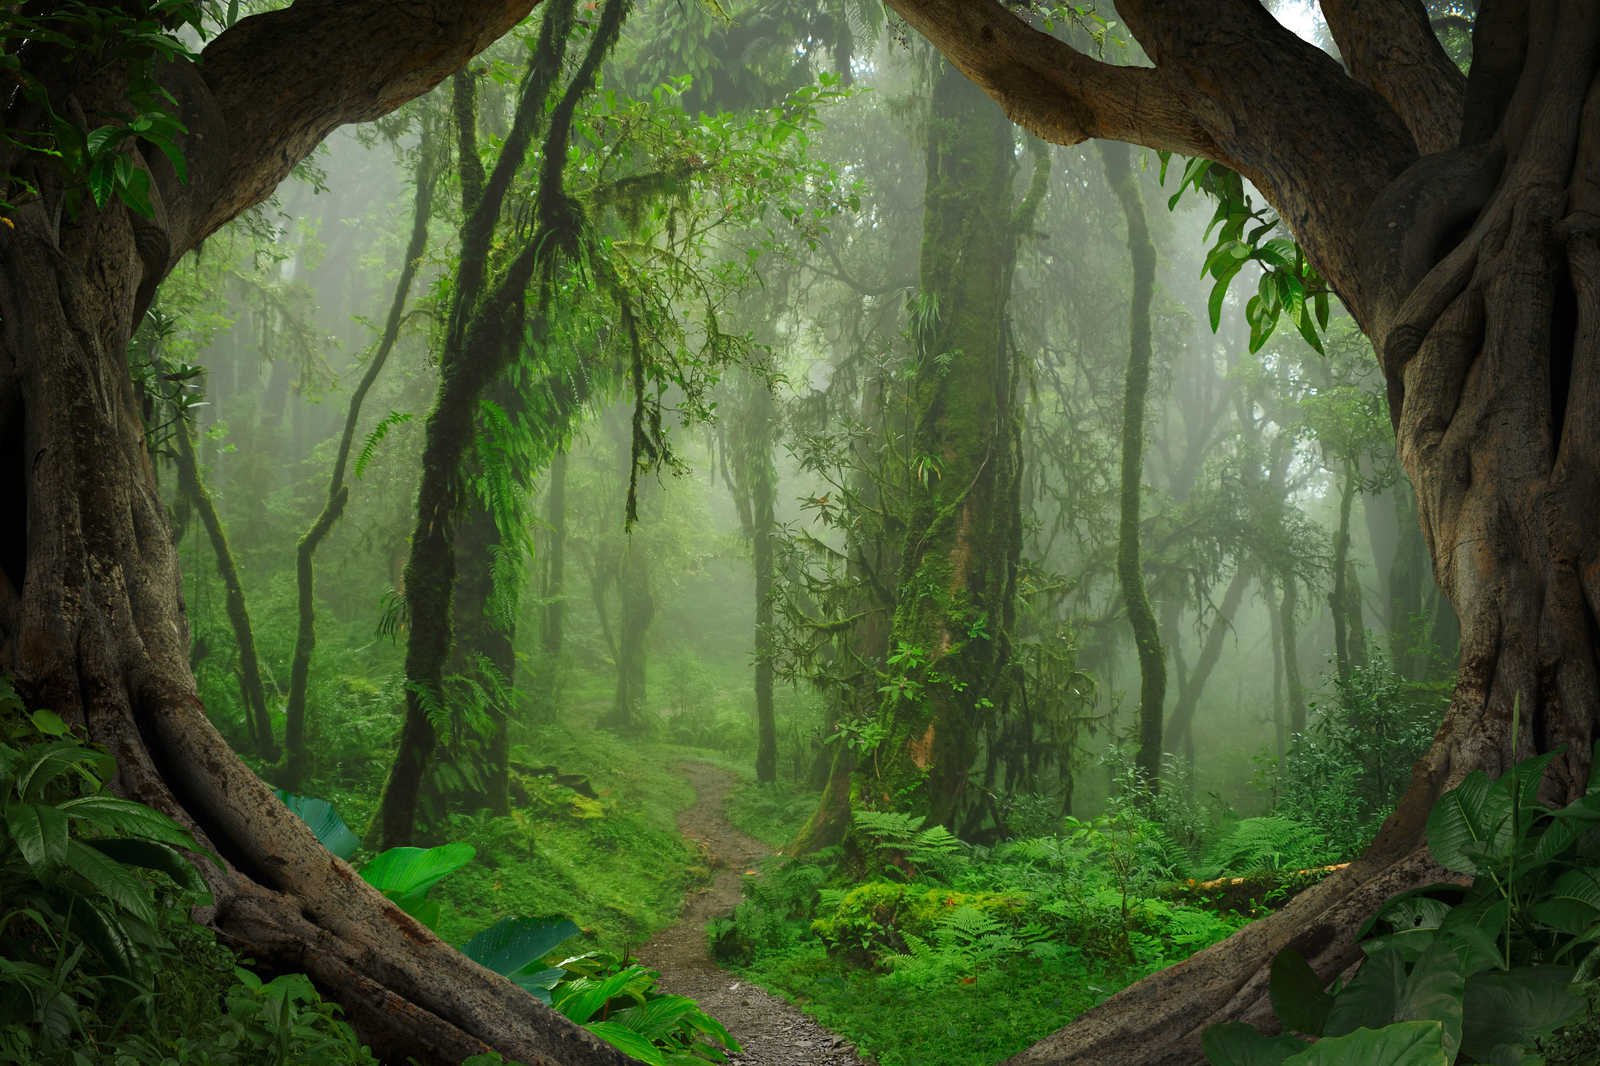             Toile magique forêt tropicale - 0,90 m x 0,60 m
        